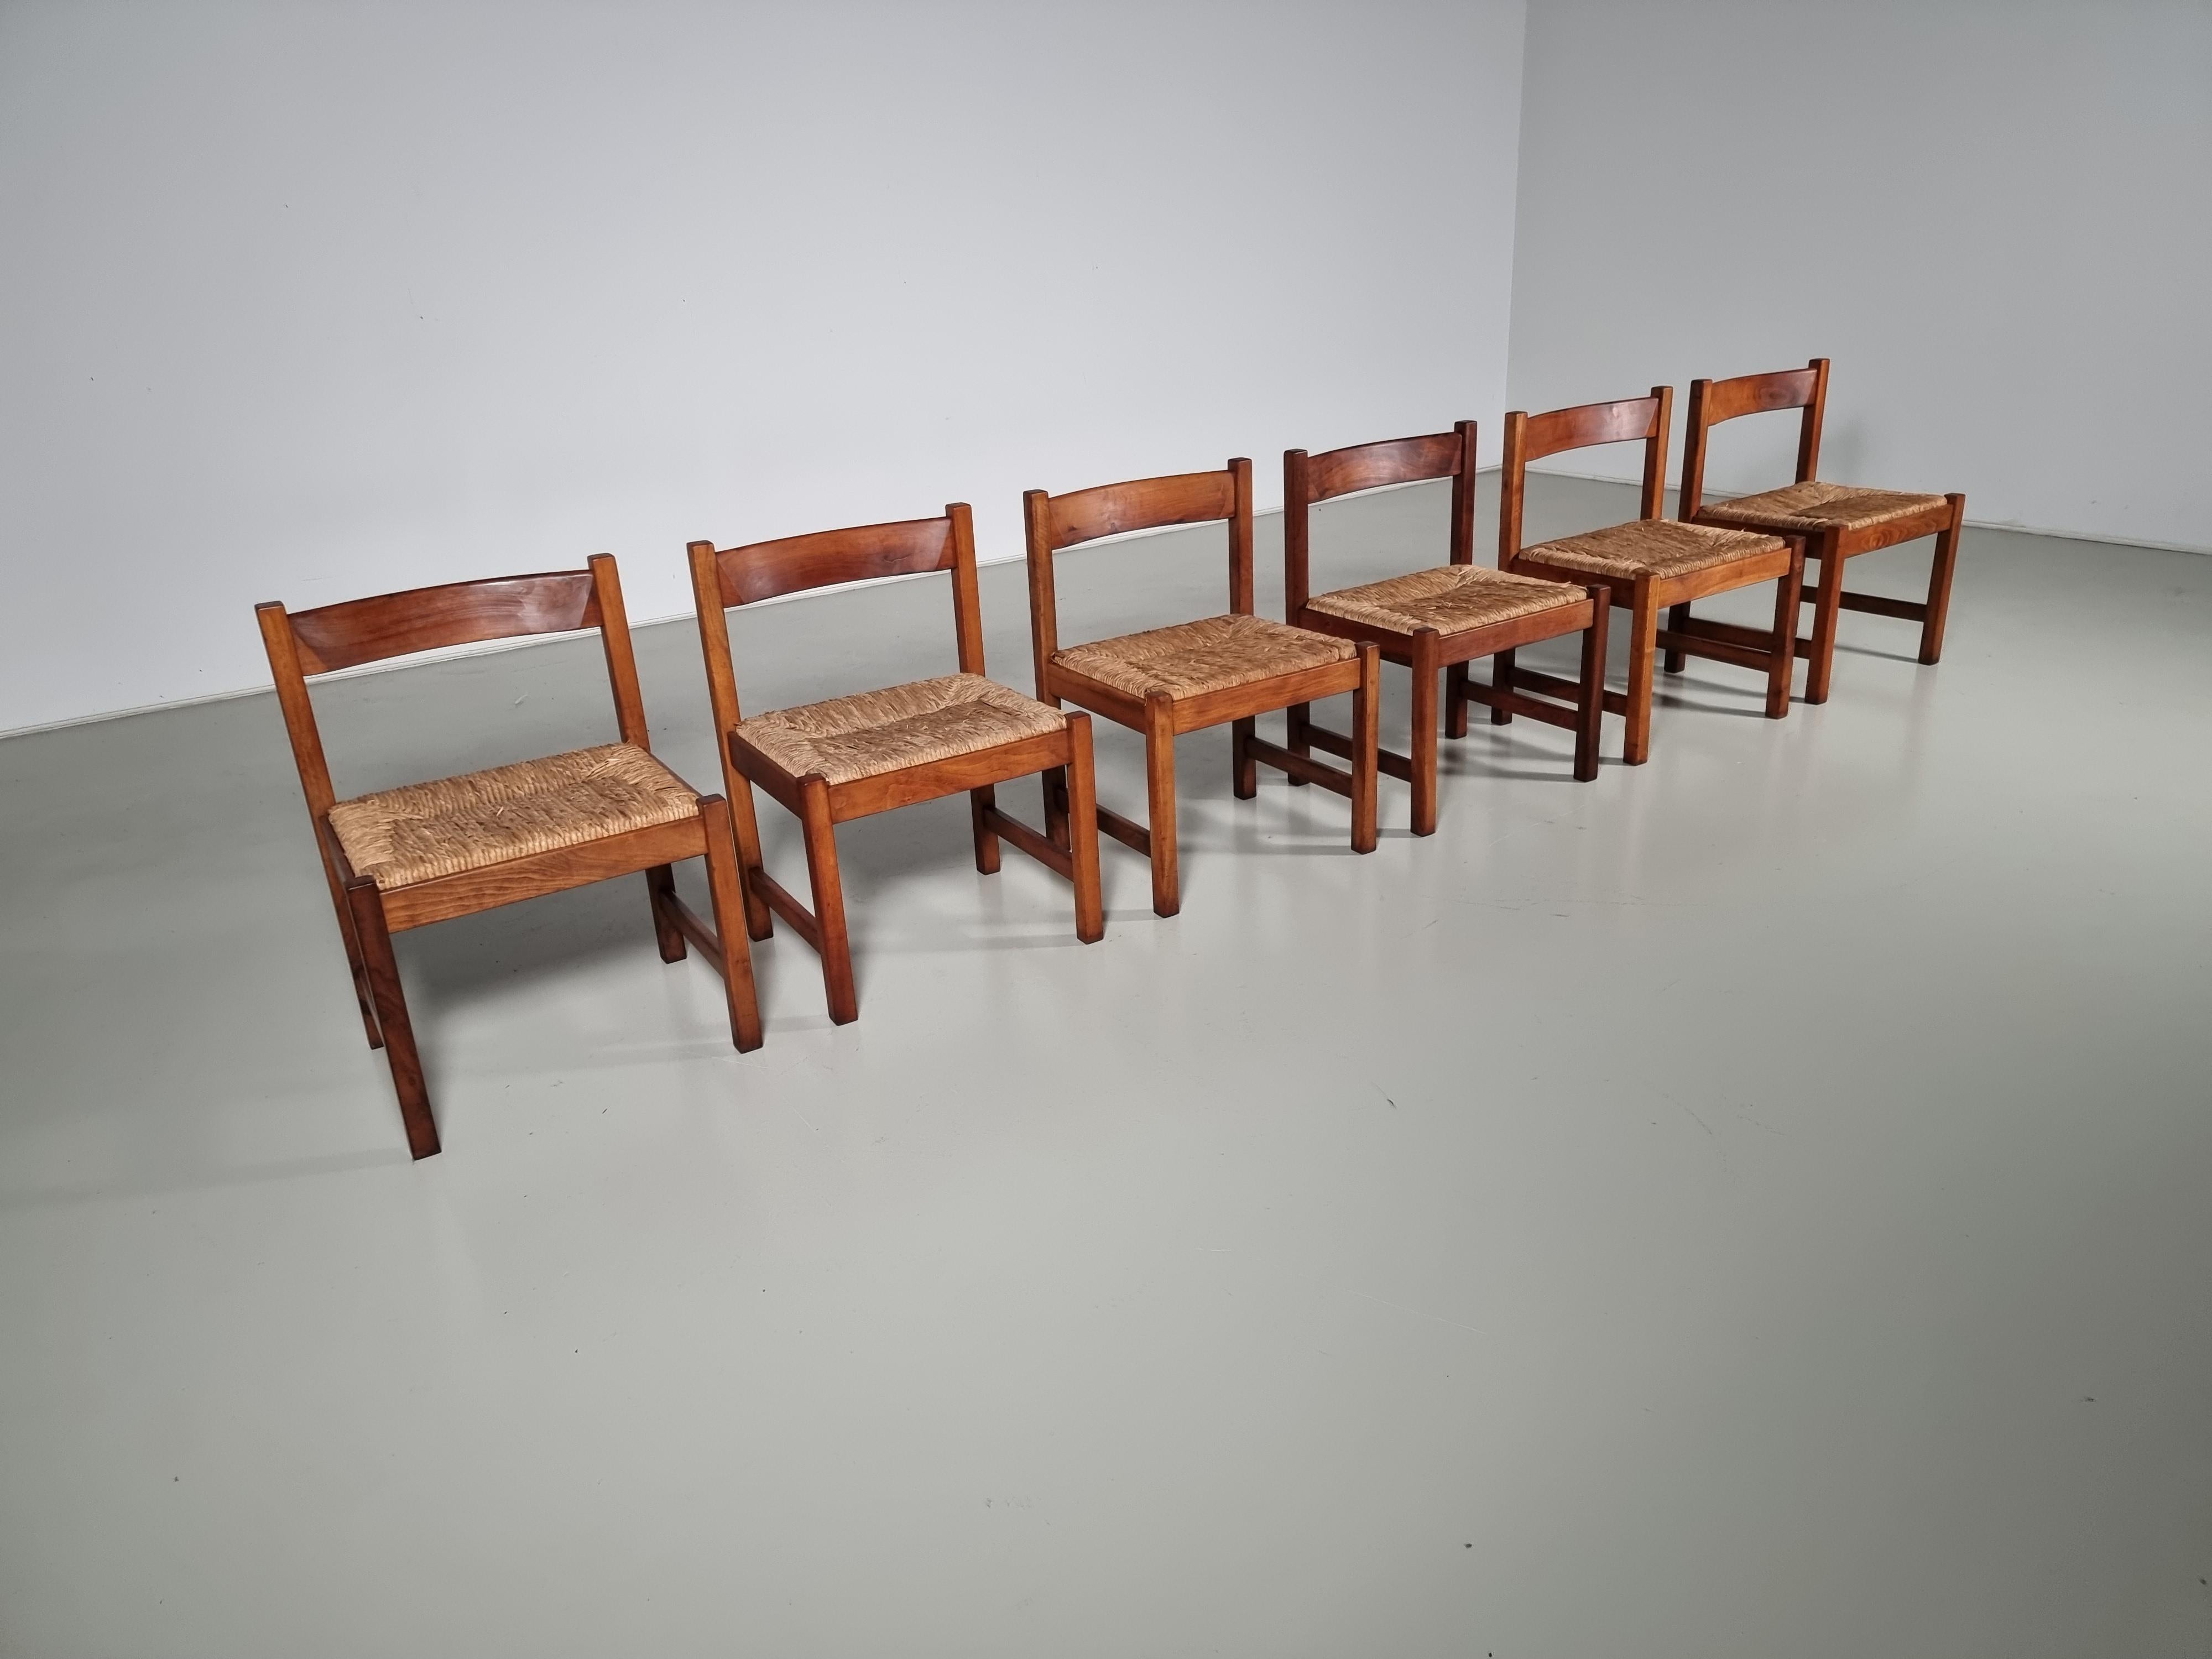 Ensemble de 6 chaises de salle à manger de la série Torbecchia, conçue par Giovanni Michelucci pour Poltronova en 1964.
Structure en noyer massif avec sièges rembourrés en jonc. Les chaises en bois massif ont acquis une patine étonnante au fil des